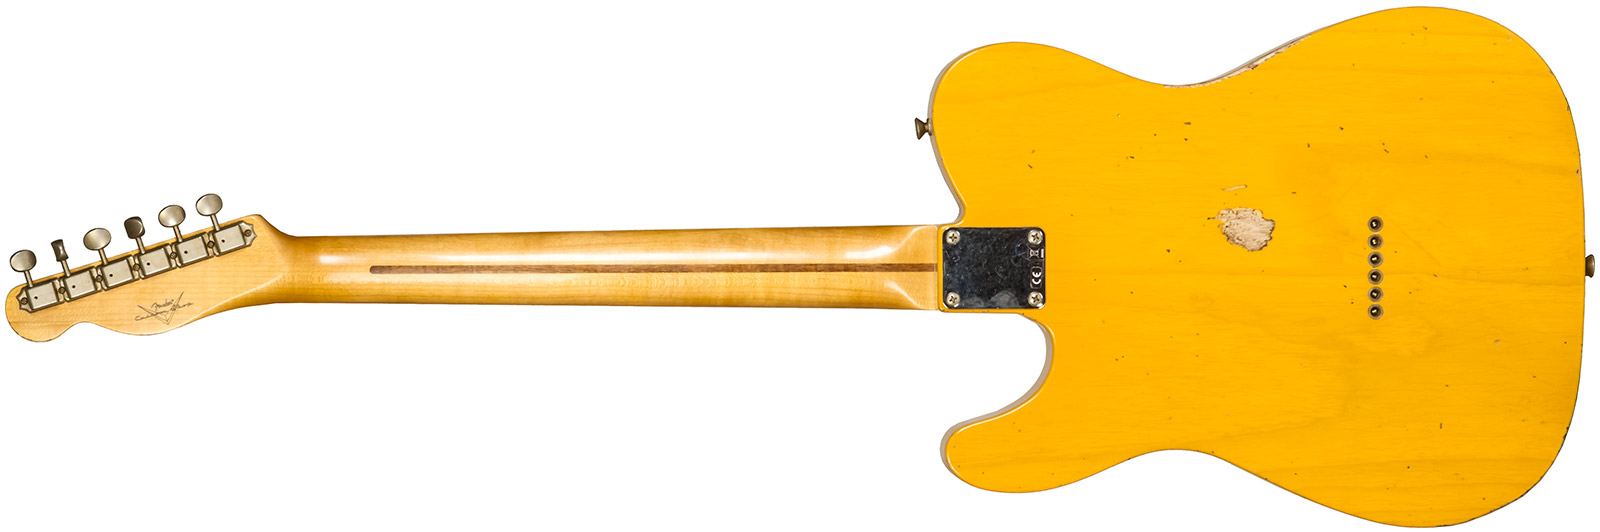 Fender Custom Shop Tele 1952 2s Ht Mn #r135090 - Relic Aged Butterscotch Blonde - Guitare Électrique Forme Tel - Variation 1